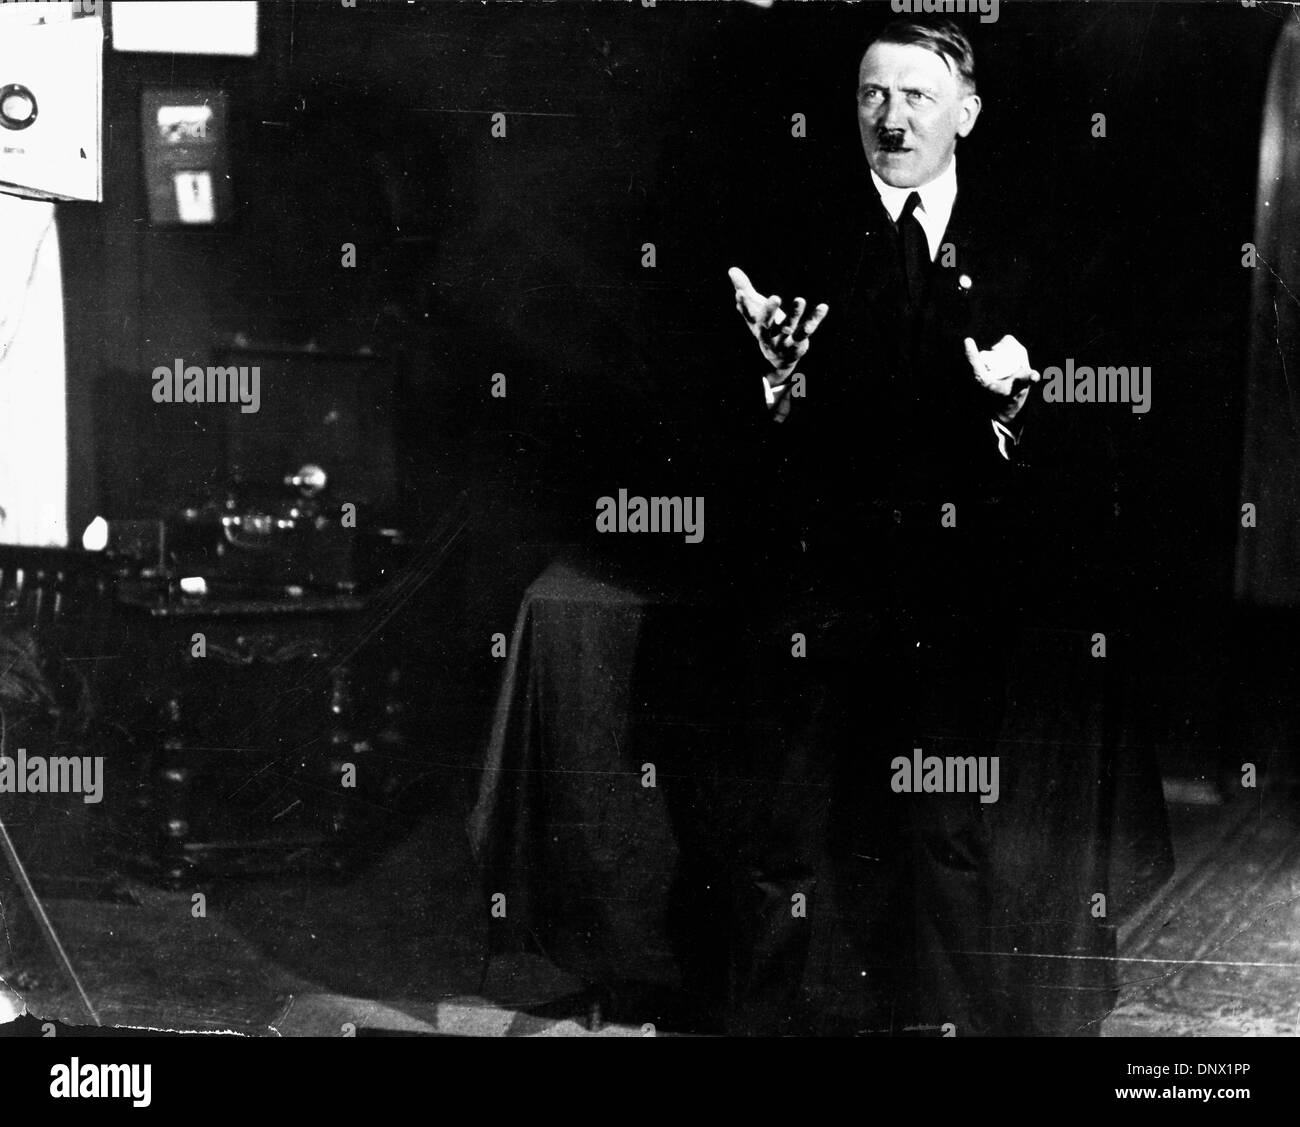 18 février, 1932 - Berlin, Allemagne - Adolf Hitler Chancelier d'Allemagne et le leader du parti nazi. Adolf Hitler (20 avril 1889 ÐApril 30, 1945) a été le Führer und Reichskanzler (chancelier) et leader de l'Allemagne de 1933 à sa mort. Il était chef du parti national-socialiste des travailleurs allemands (NSDAP), mieux connu sous le nom de Parti nazi. Au sommet de son pow Banque D'Images